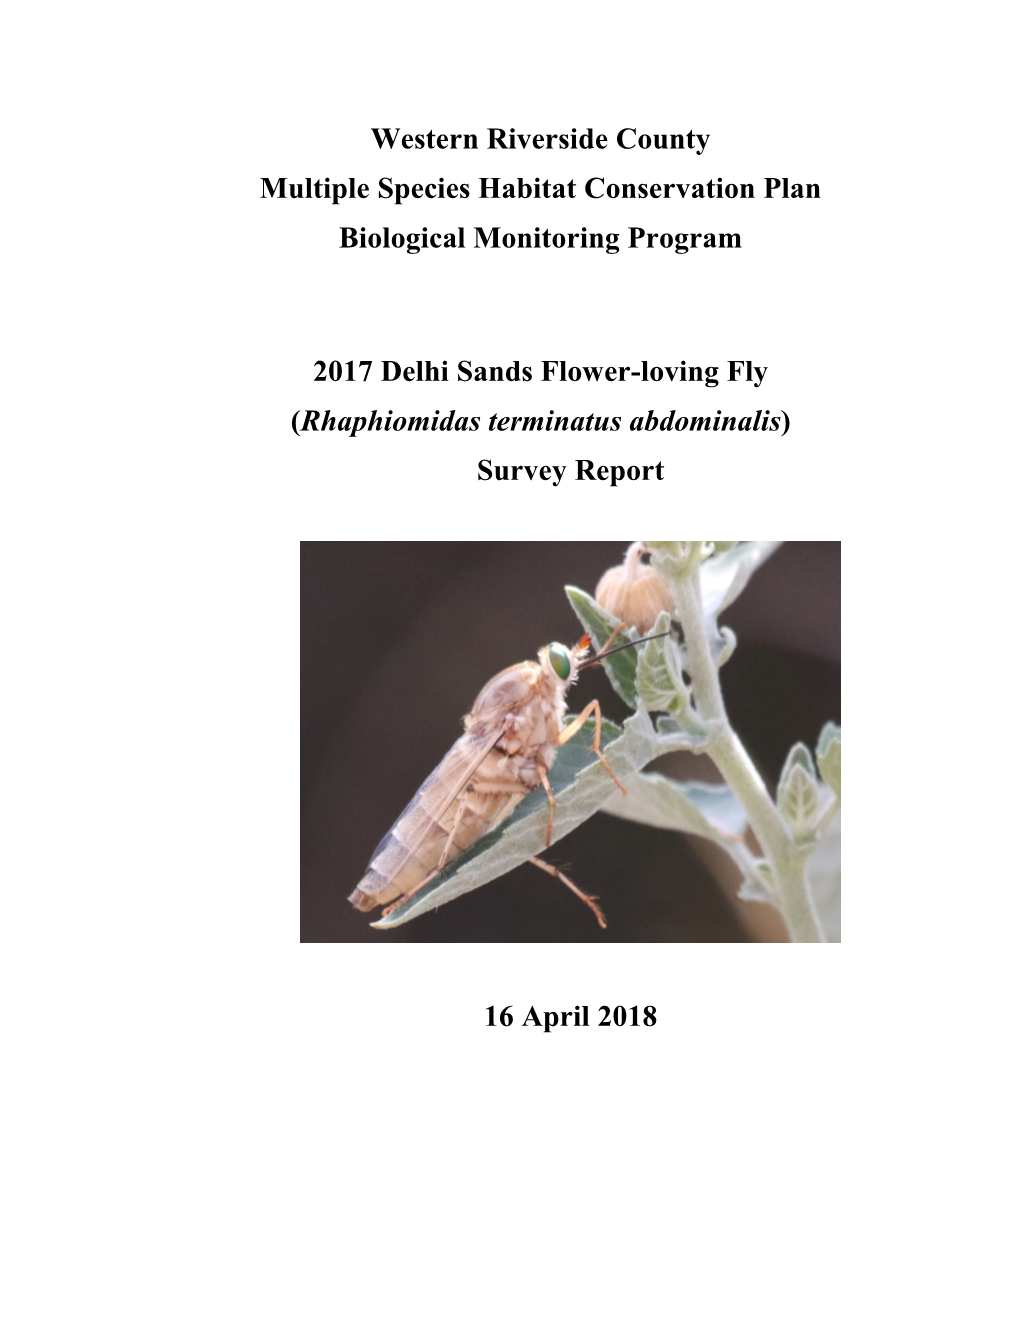 Delhi Sands Flowerloving Fly Survey Report 2017